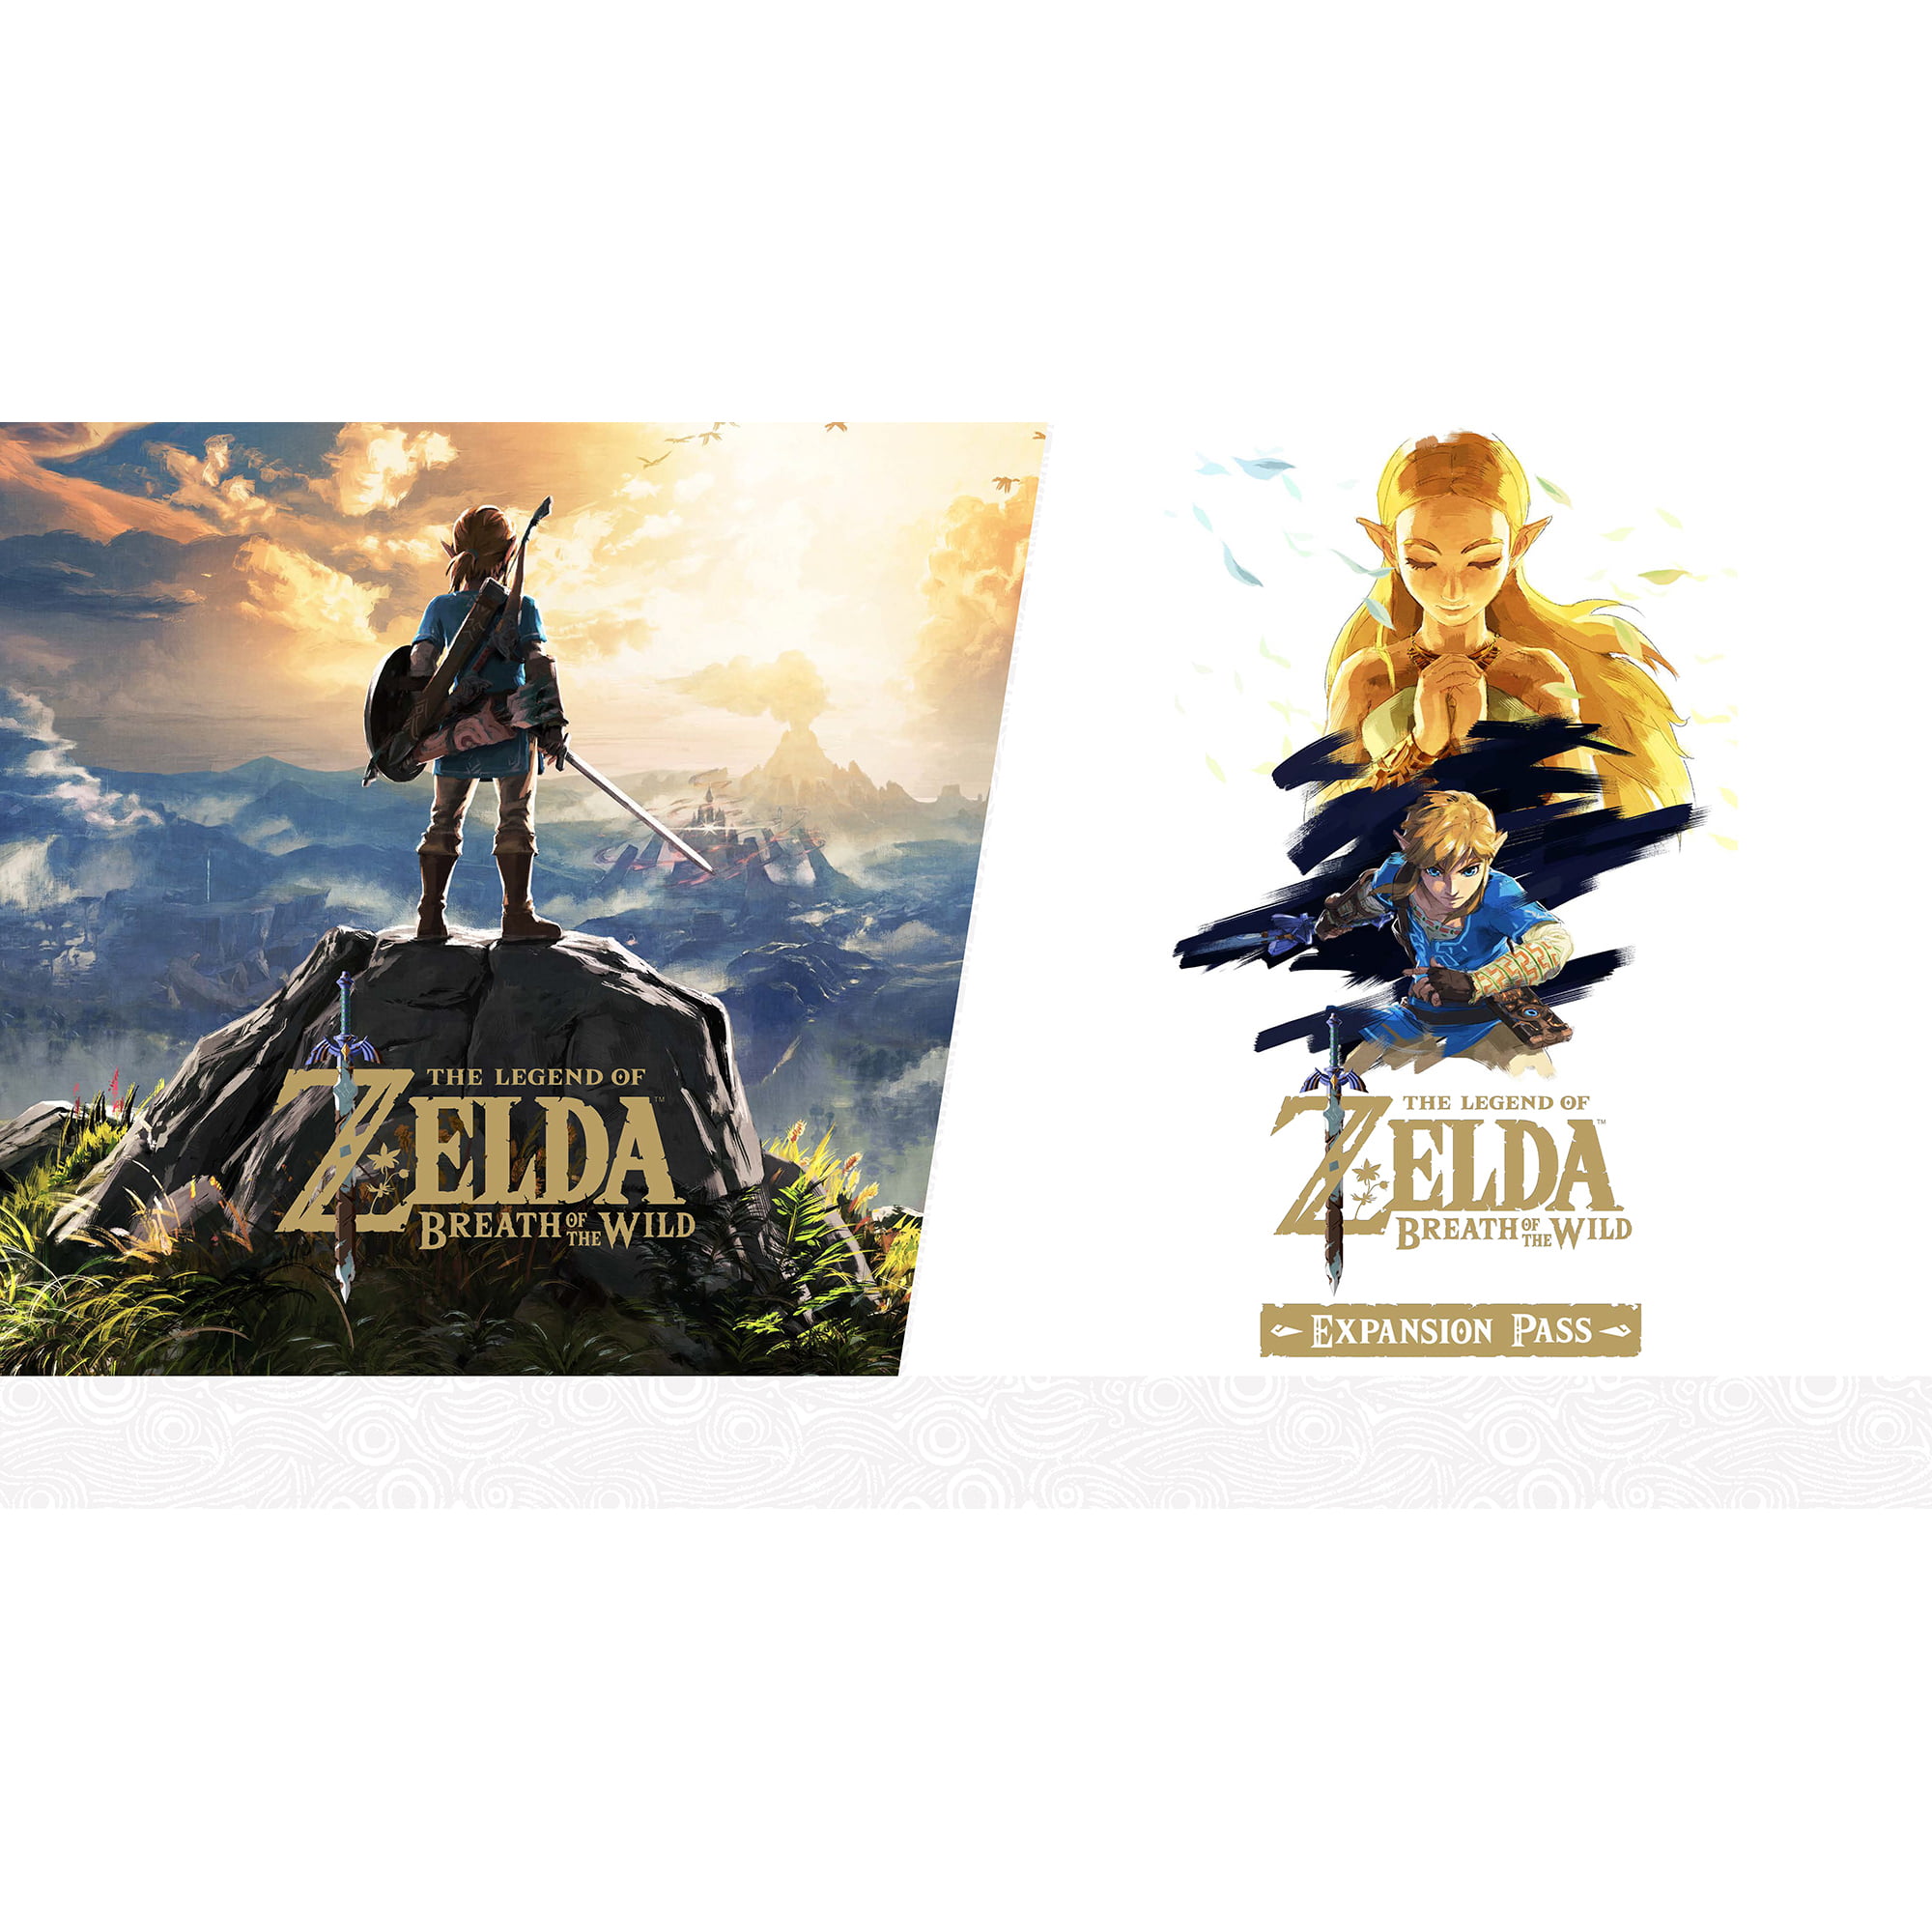 The Legend Of Zelda Breath Of Wild Exp Pass Nintendo Nintendo Switch Digital Download 045496592547 Walmartcom - meta fuel roblox updates nintendo games logos drawings